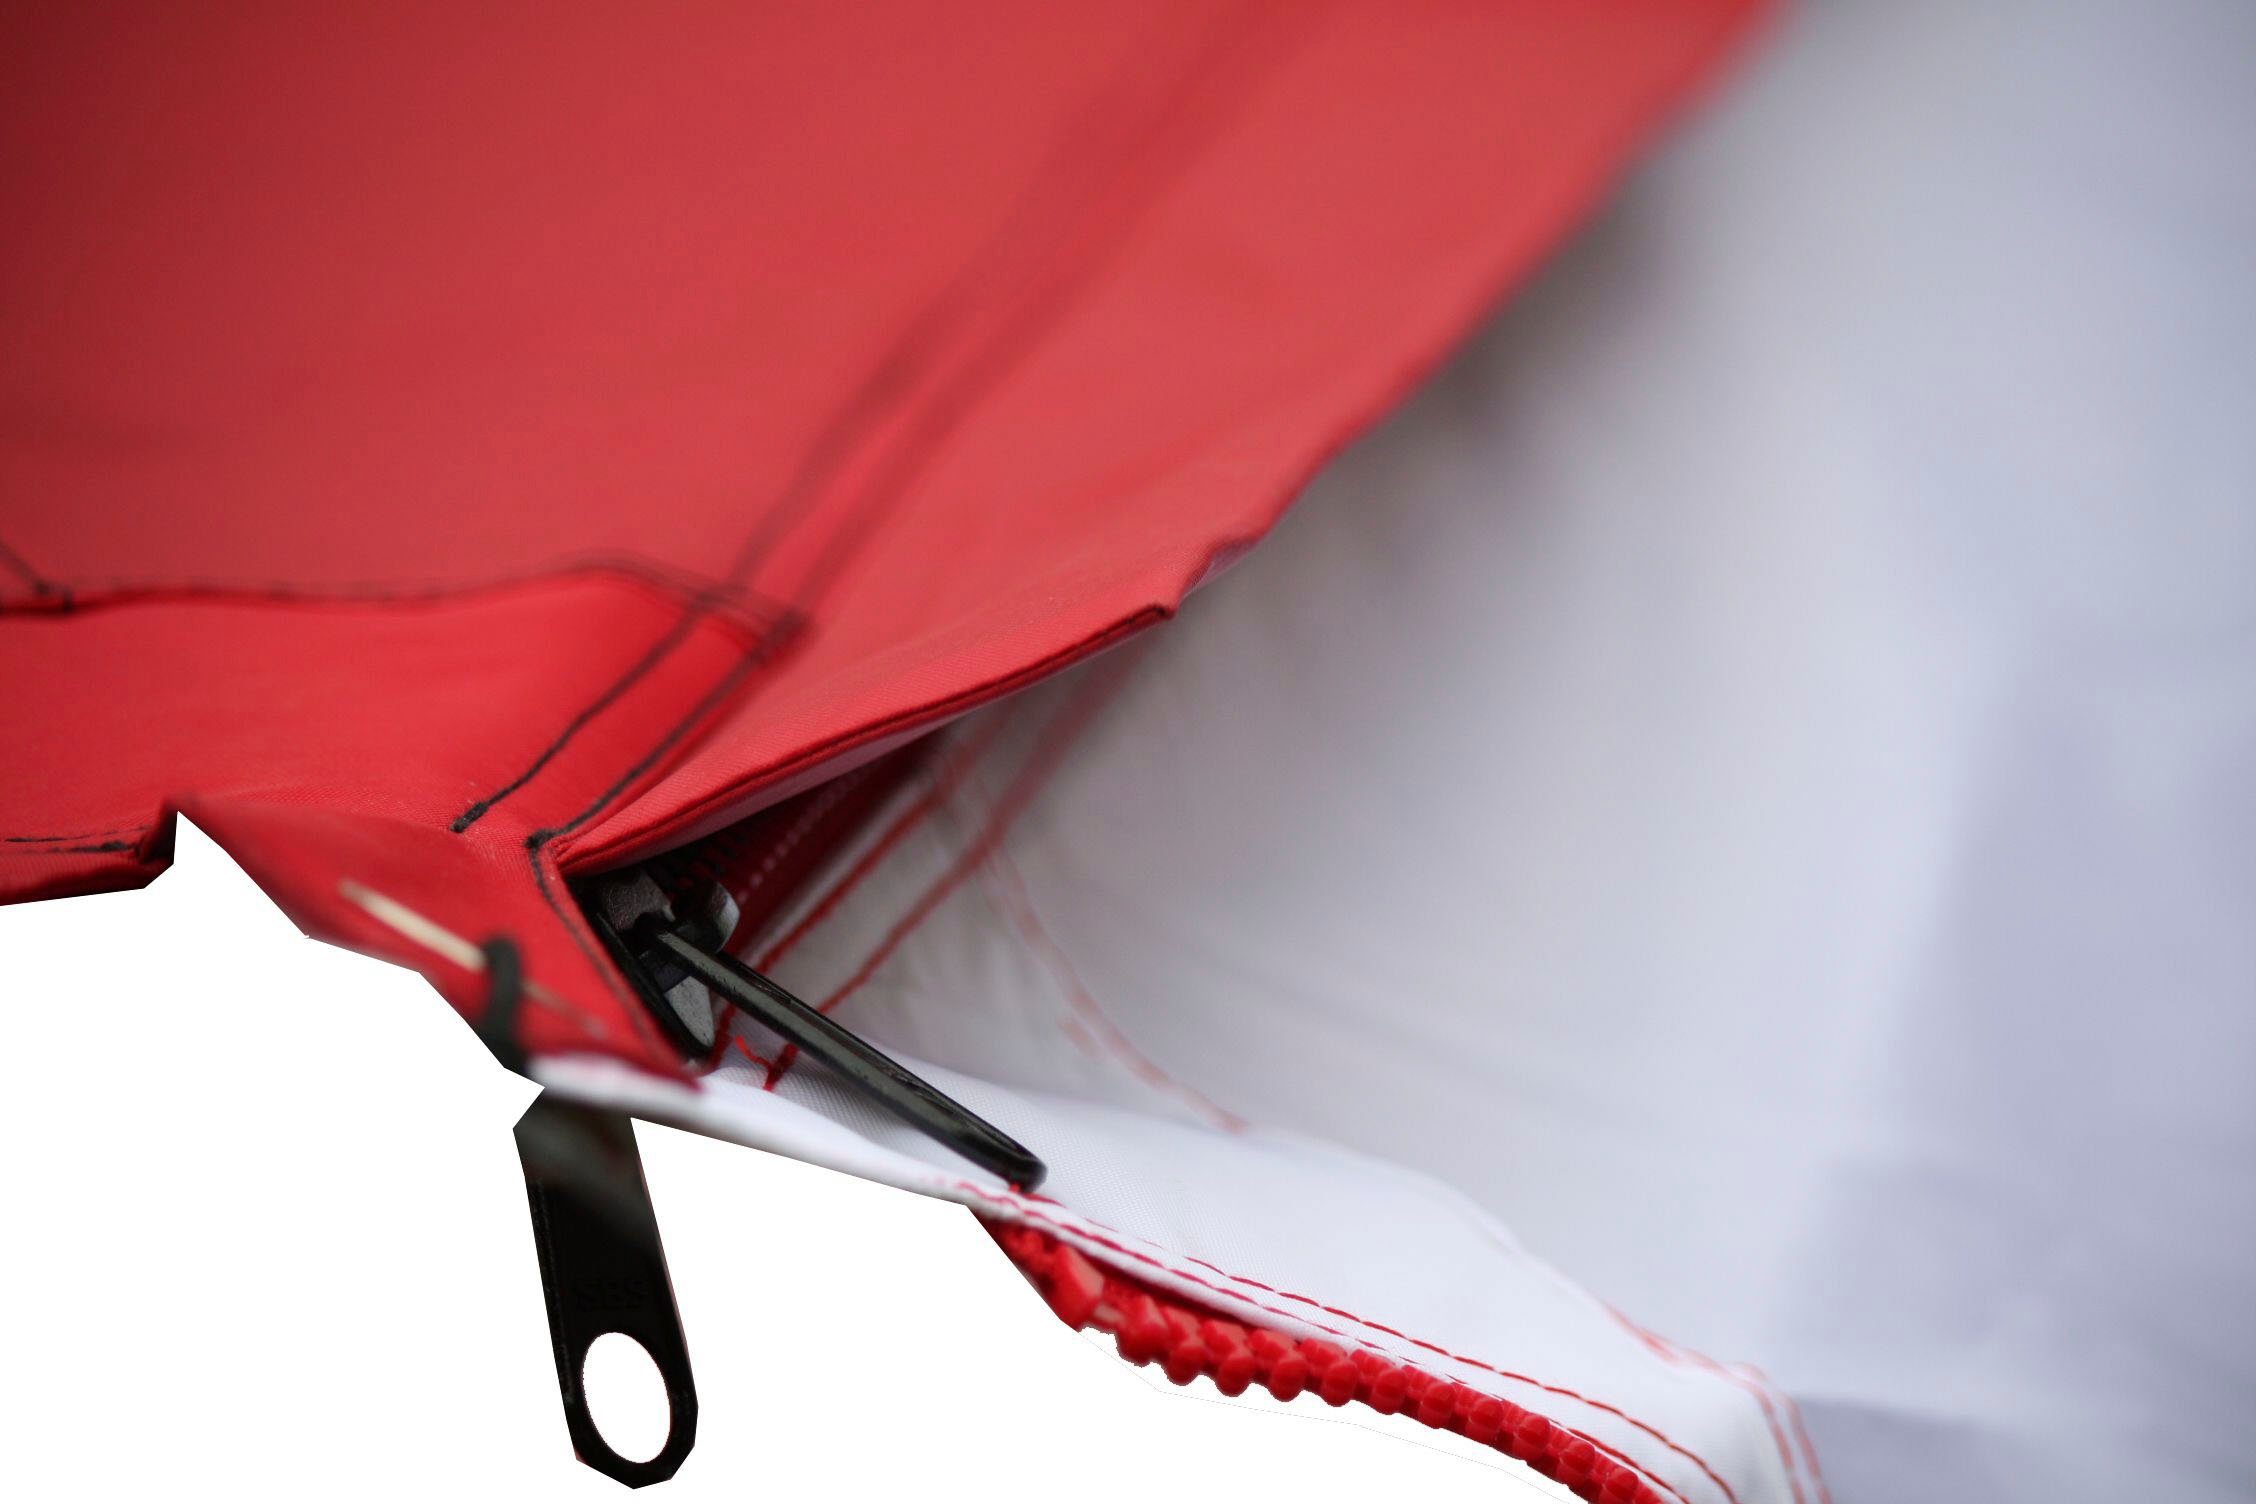 Sonnensegel rot mit RV-Abdeckung Canvas Single / schwarz BENT RV Zip-Protect